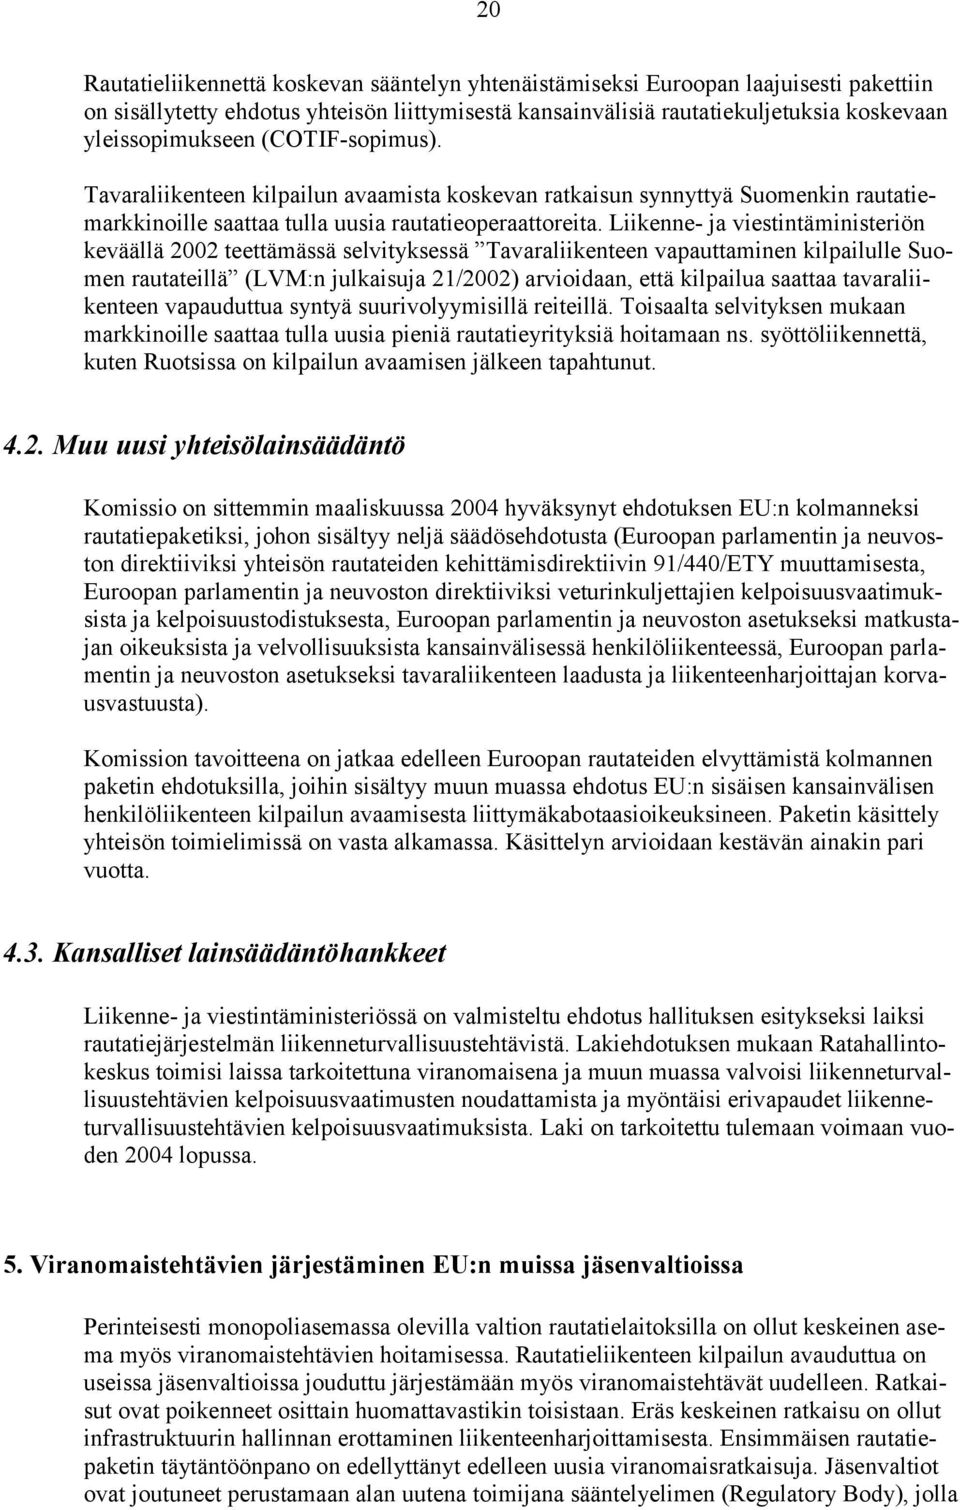 Liikenne- ja viestintäministeriön keväällä 2002 teettämässä selvityksessä Tavaraliikenteen vapauttaminen kilpailulle Suomen rautateillä (LVM:n julkaisuja 21/2002) arvioidaan, että kilpailua saattaa